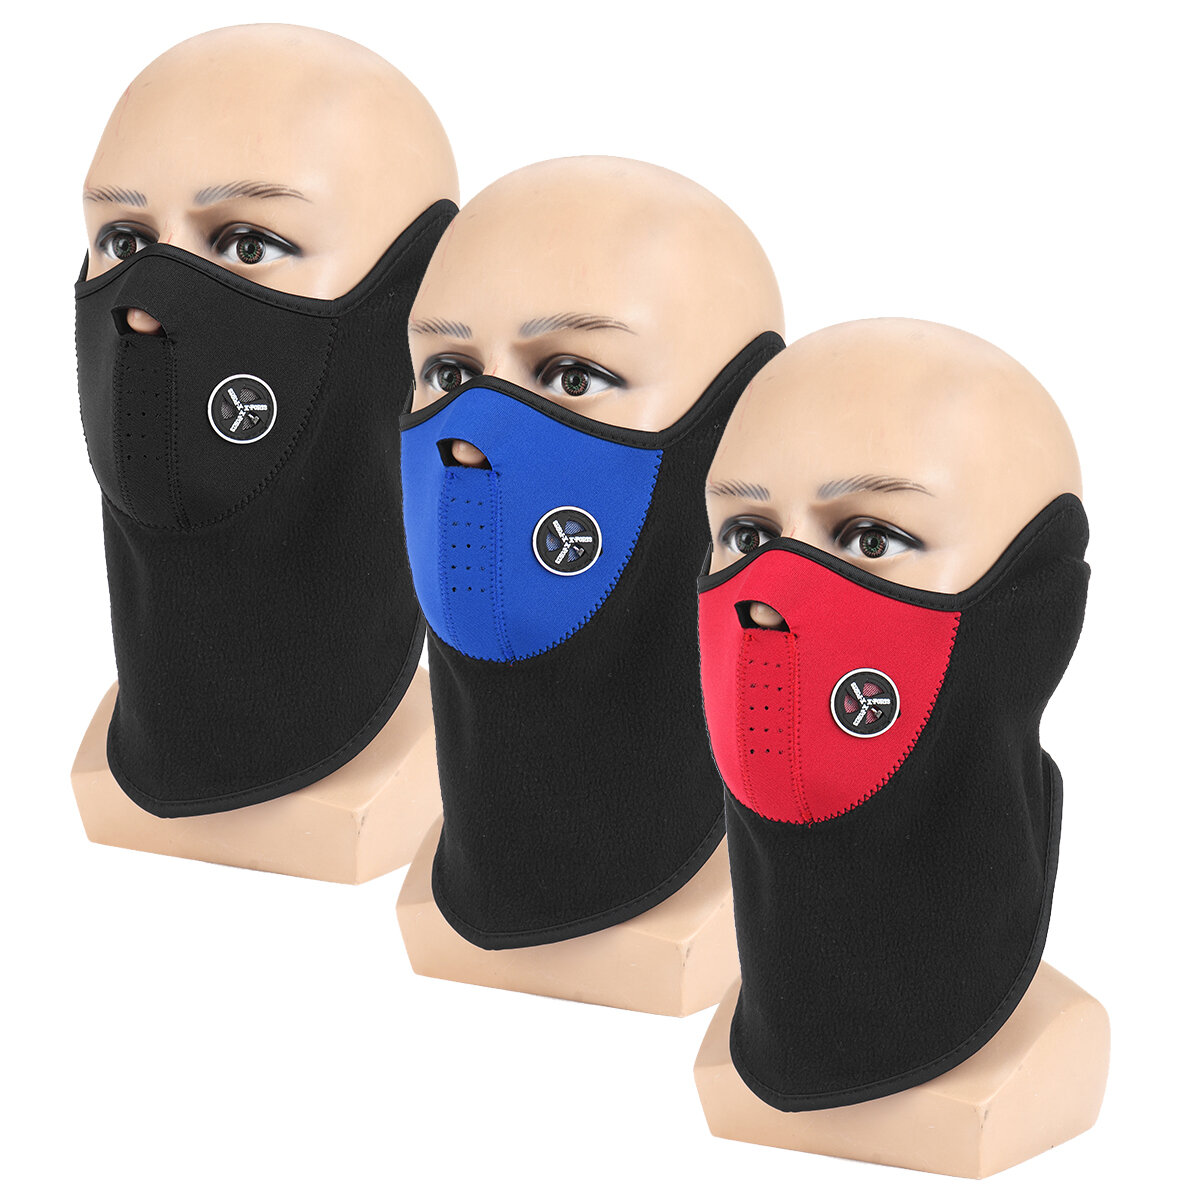 ürkçe: Kış rüzgarına dayanıklı yarım yüz maskesi, kalın boyun sıcak tutucu ile 3 renkte, kayak, bisiklet ve diğer açık hava kış sporları için ideal.